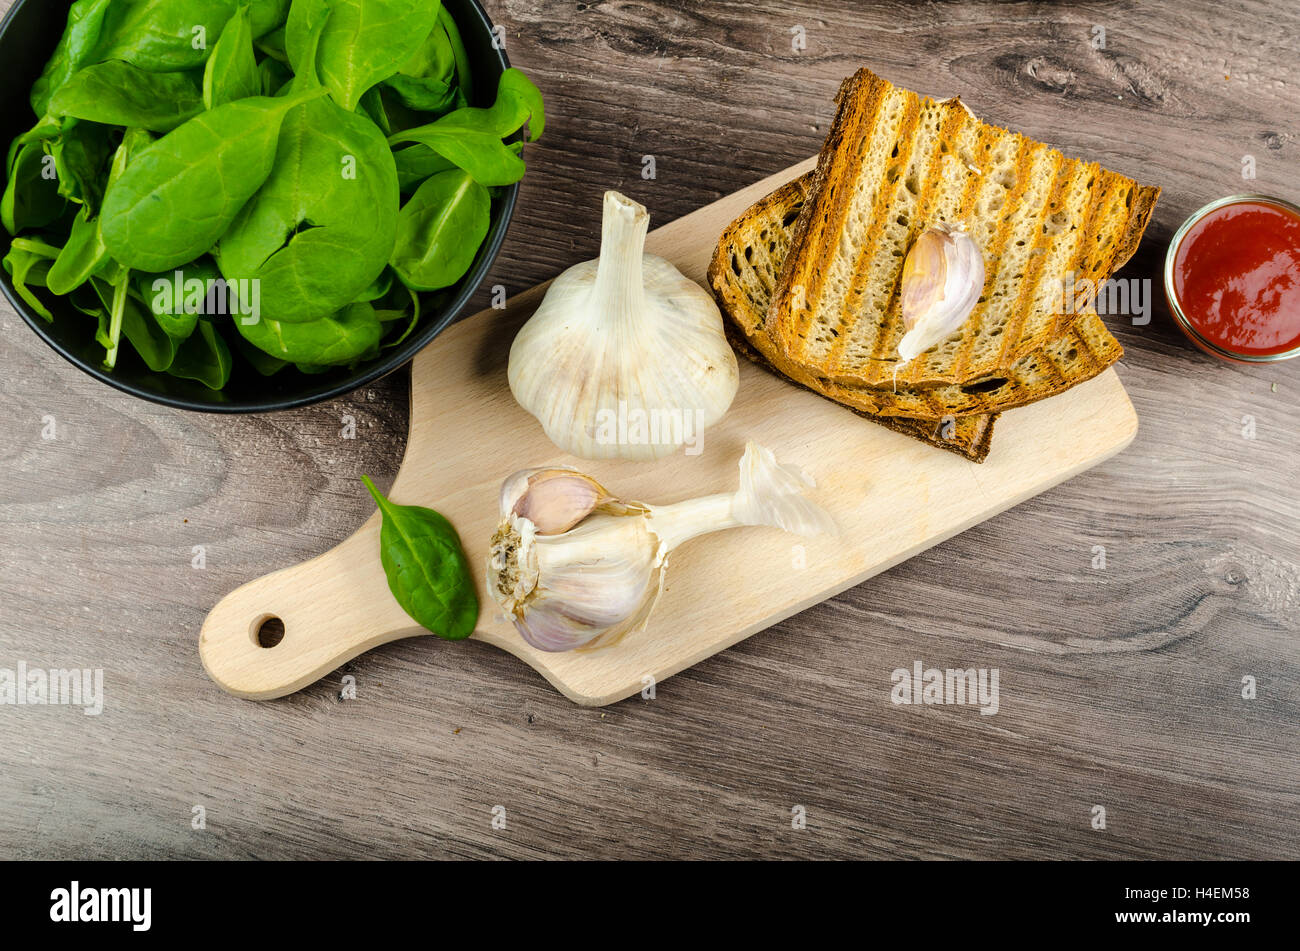 Les ailes de poulet avec du pain à l'ail panini, pommes de terre épicées rustique, feuilles d'épinards fraîches Banque D'Images